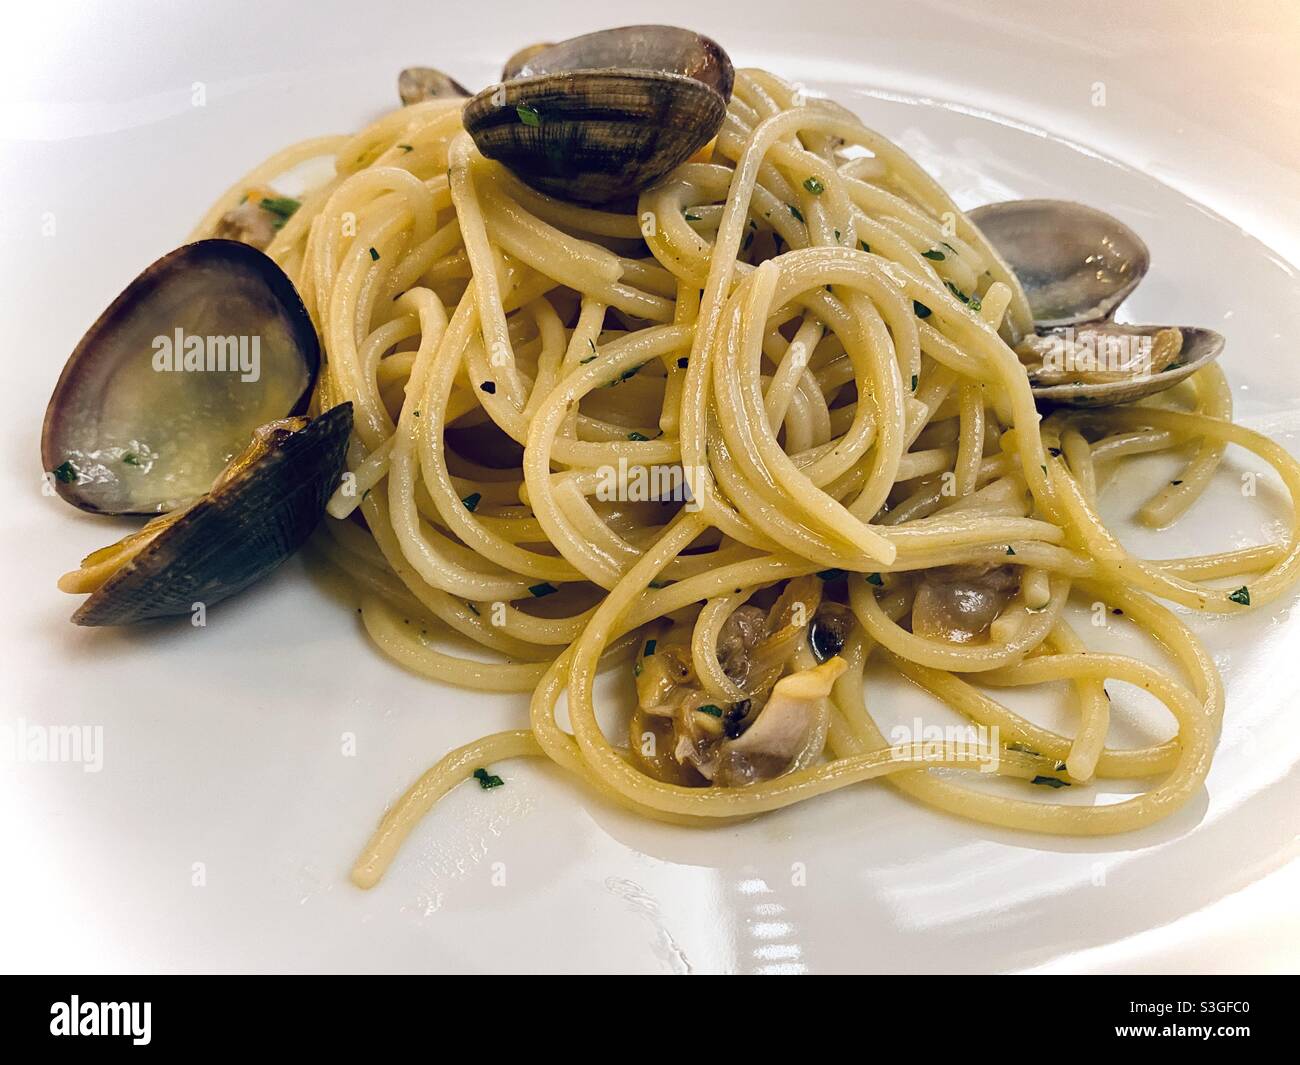 Spaghetti alla vongole Veraci (spaghetti with clams), perfectly done in Rome, Italy Stock Photo